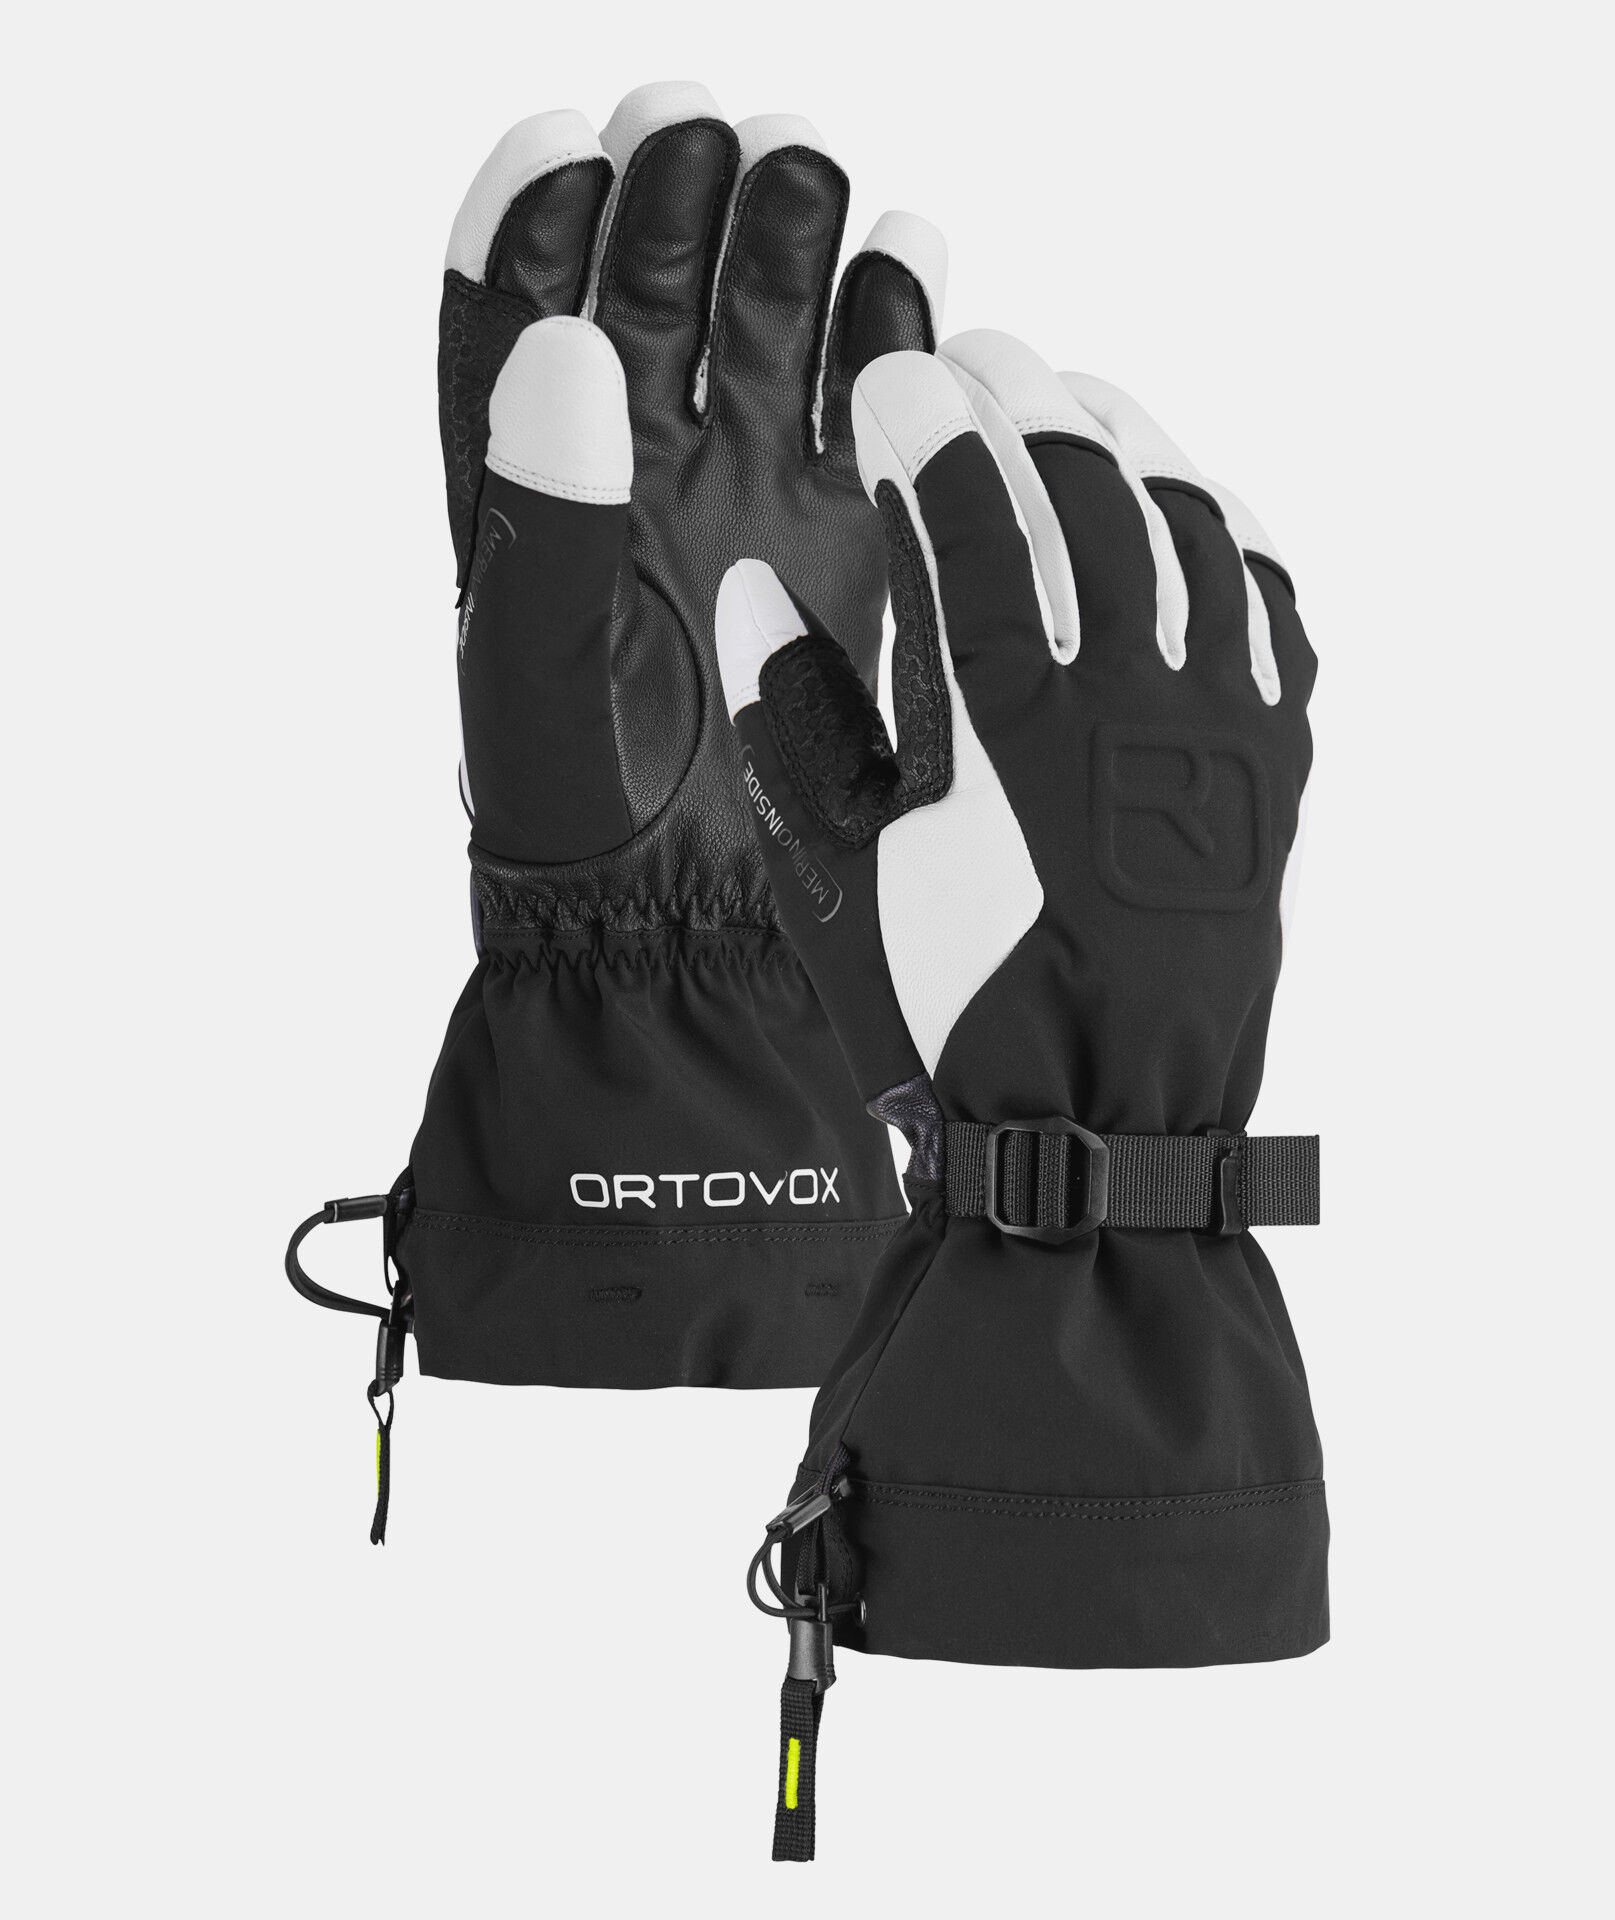 Ortovox Merino Freeride Glove - Ski gloves - Men's